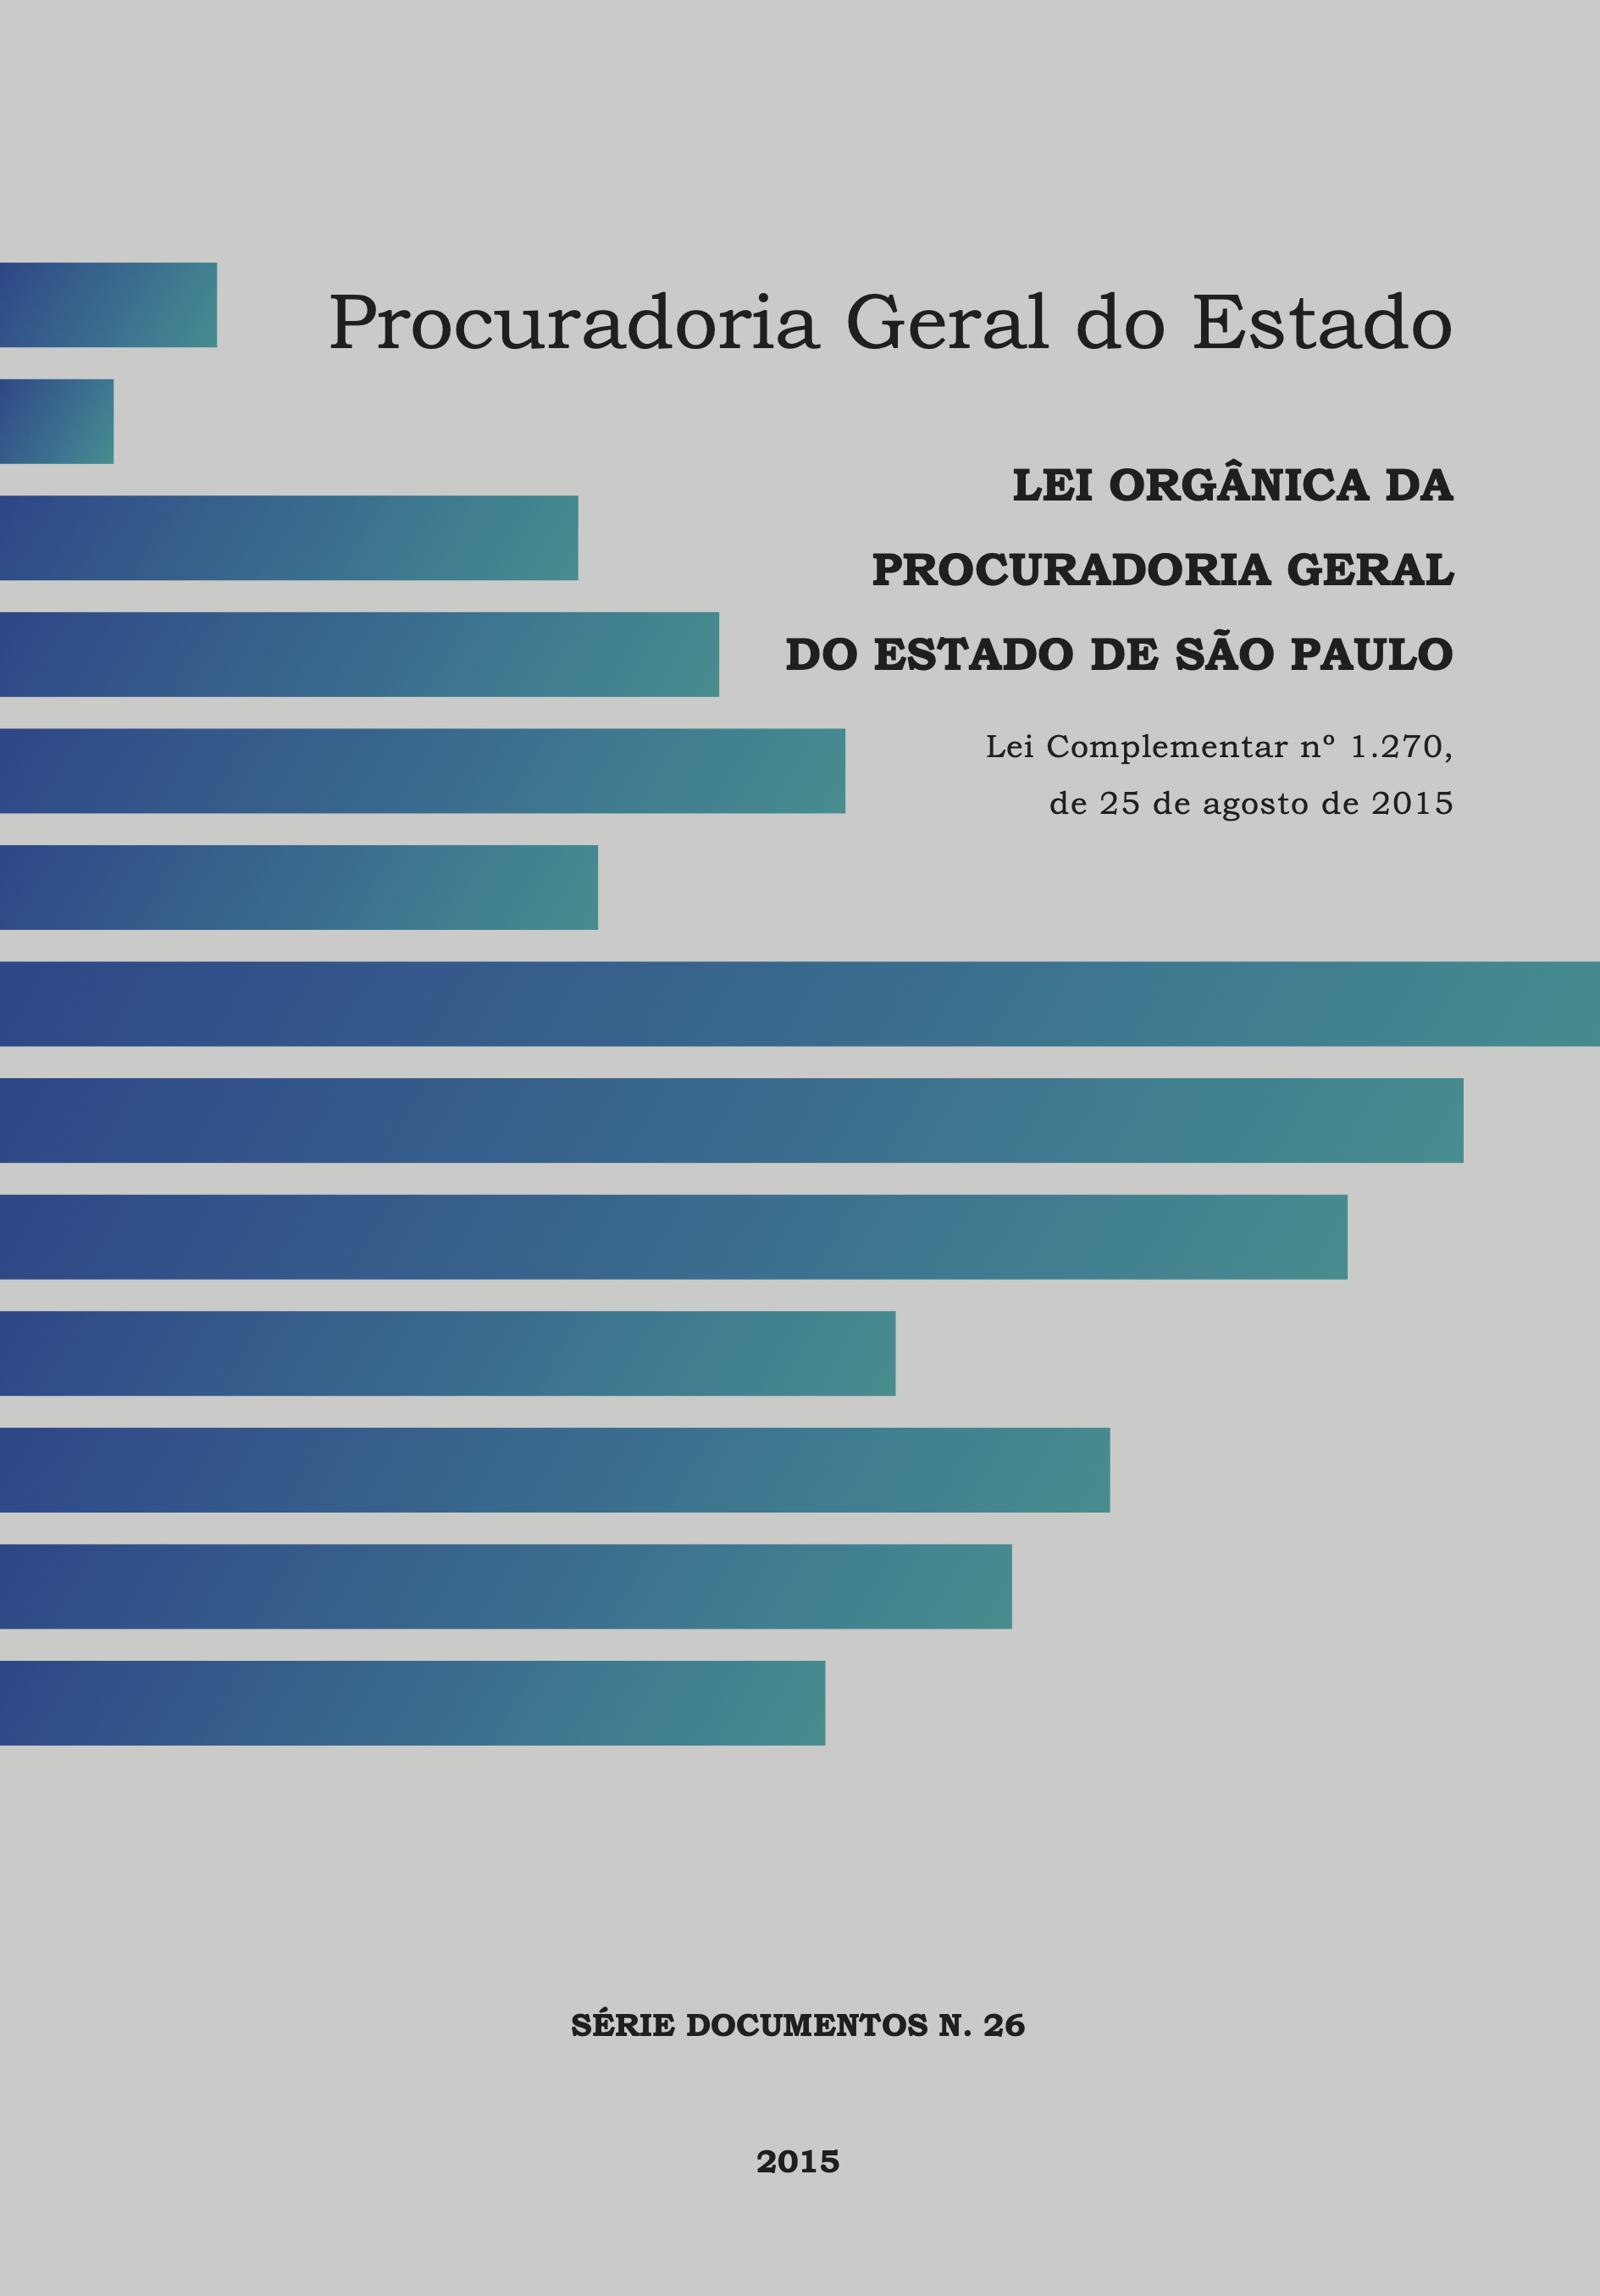 						Visualizar 2015: Lei Orgânica Da Procuradoria Geral Do Estado de São Paulo Lei Complementar nº 1.270, de 25 de agosto de 2015
					